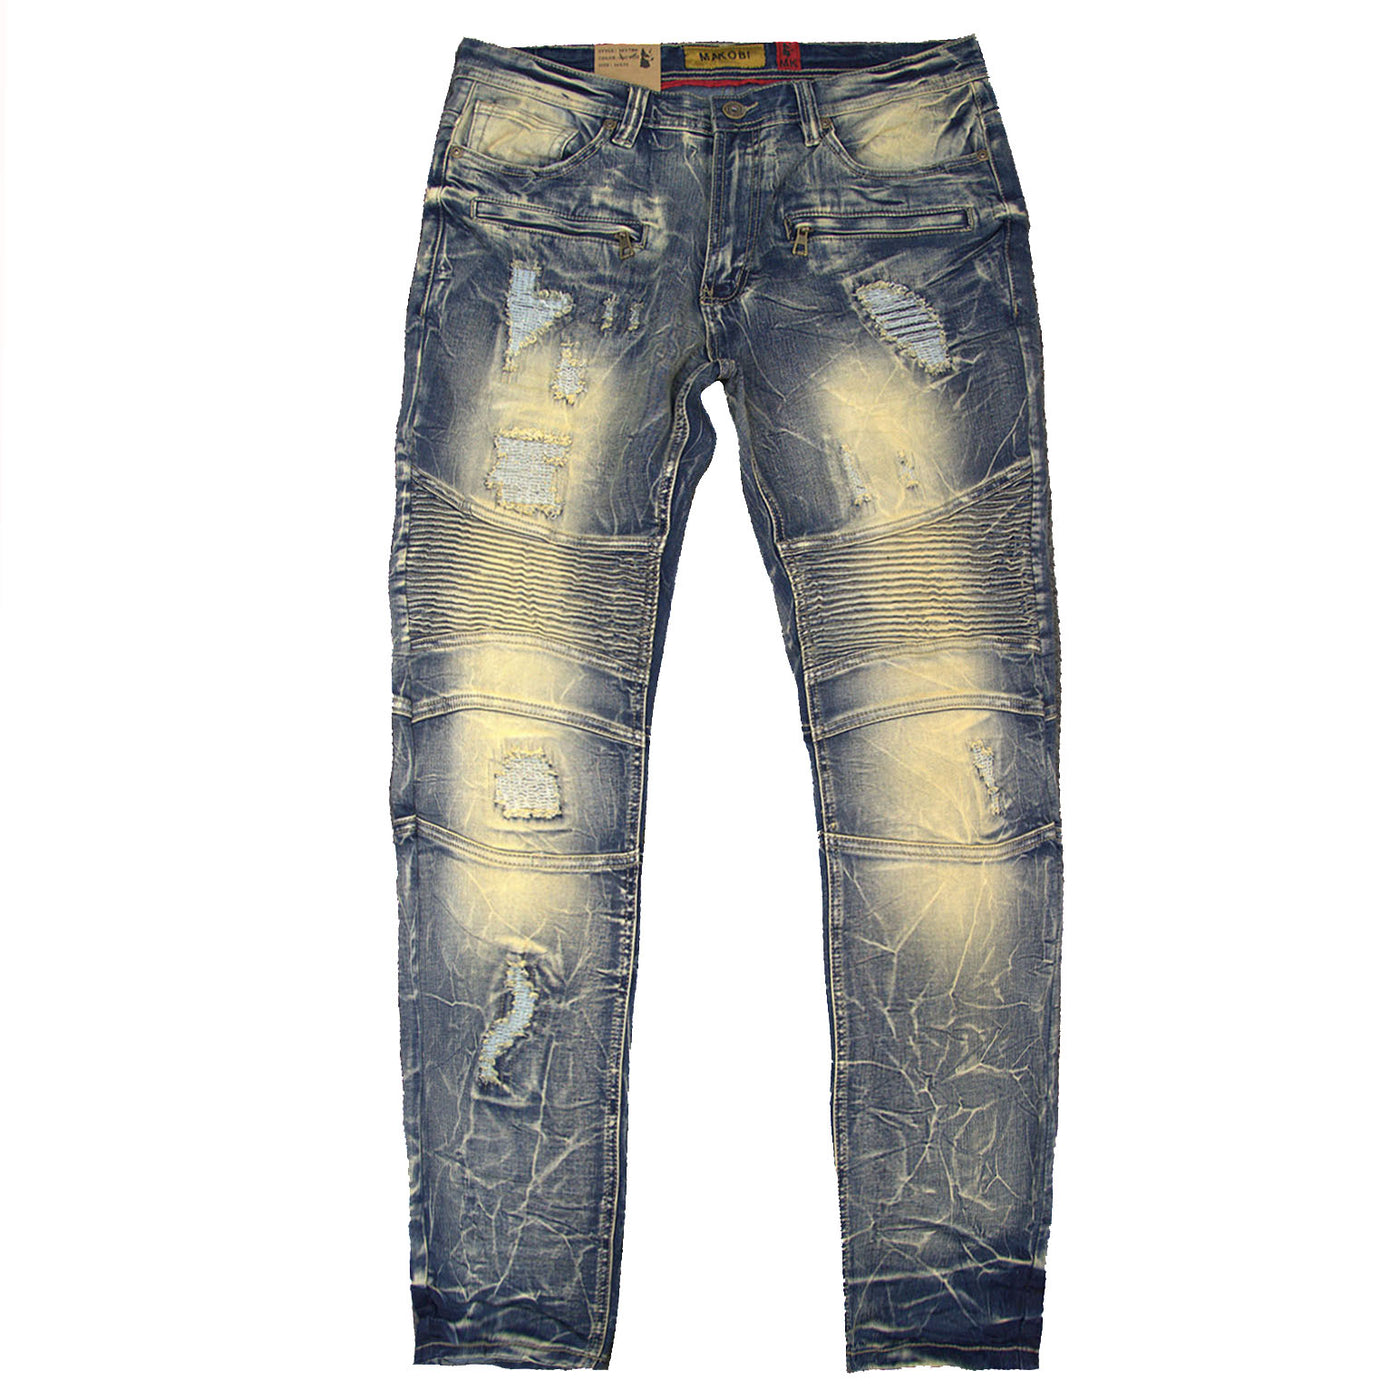 M1786 Makobi Prado Biker Jeans pẹlu Rip &amp; Tunṣe - Idọti Wẹ